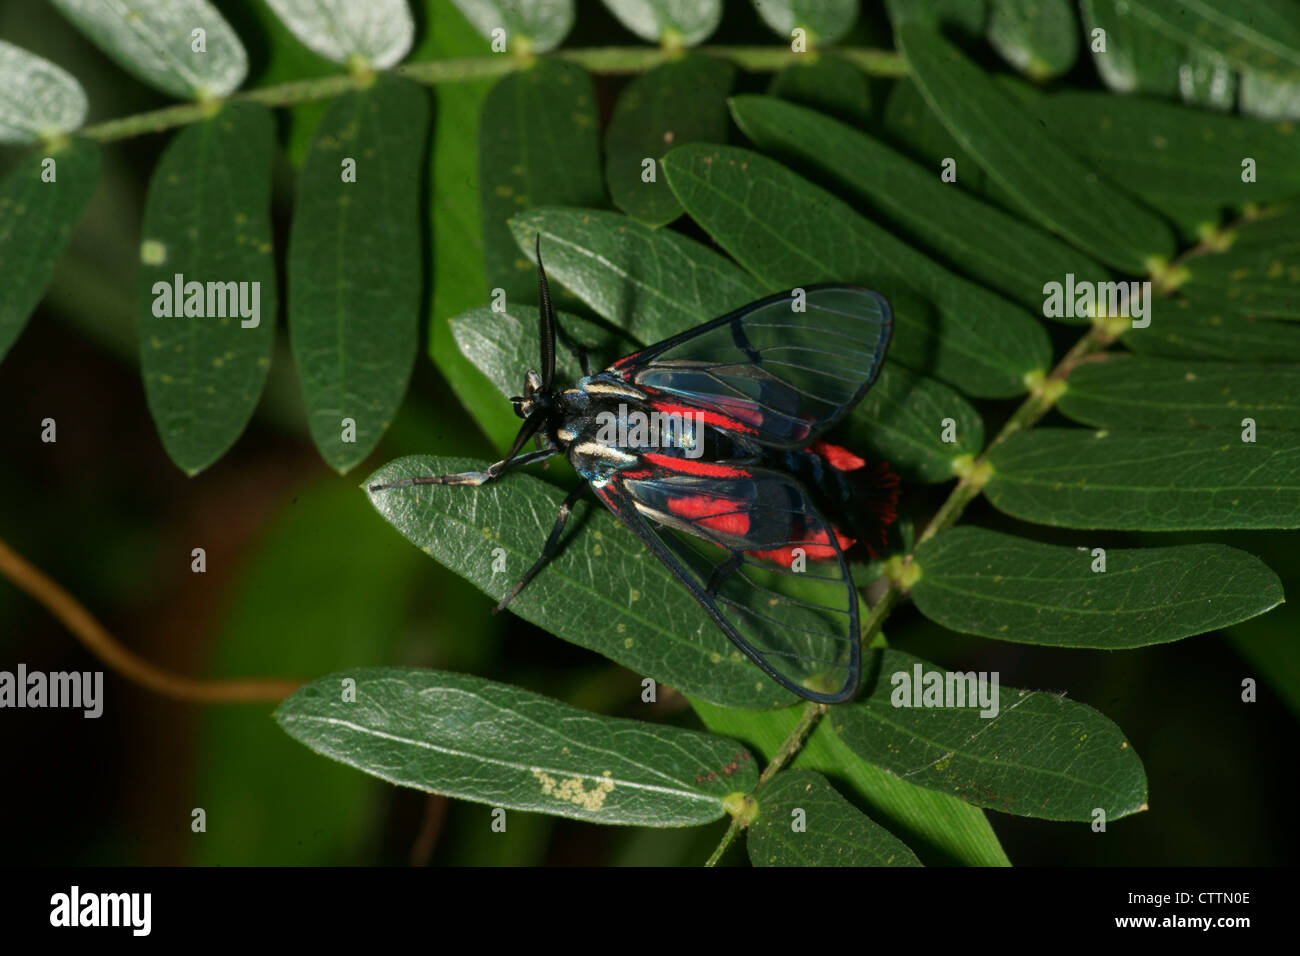 Cosmosoma Wasp Moth on leaf Stock Photo